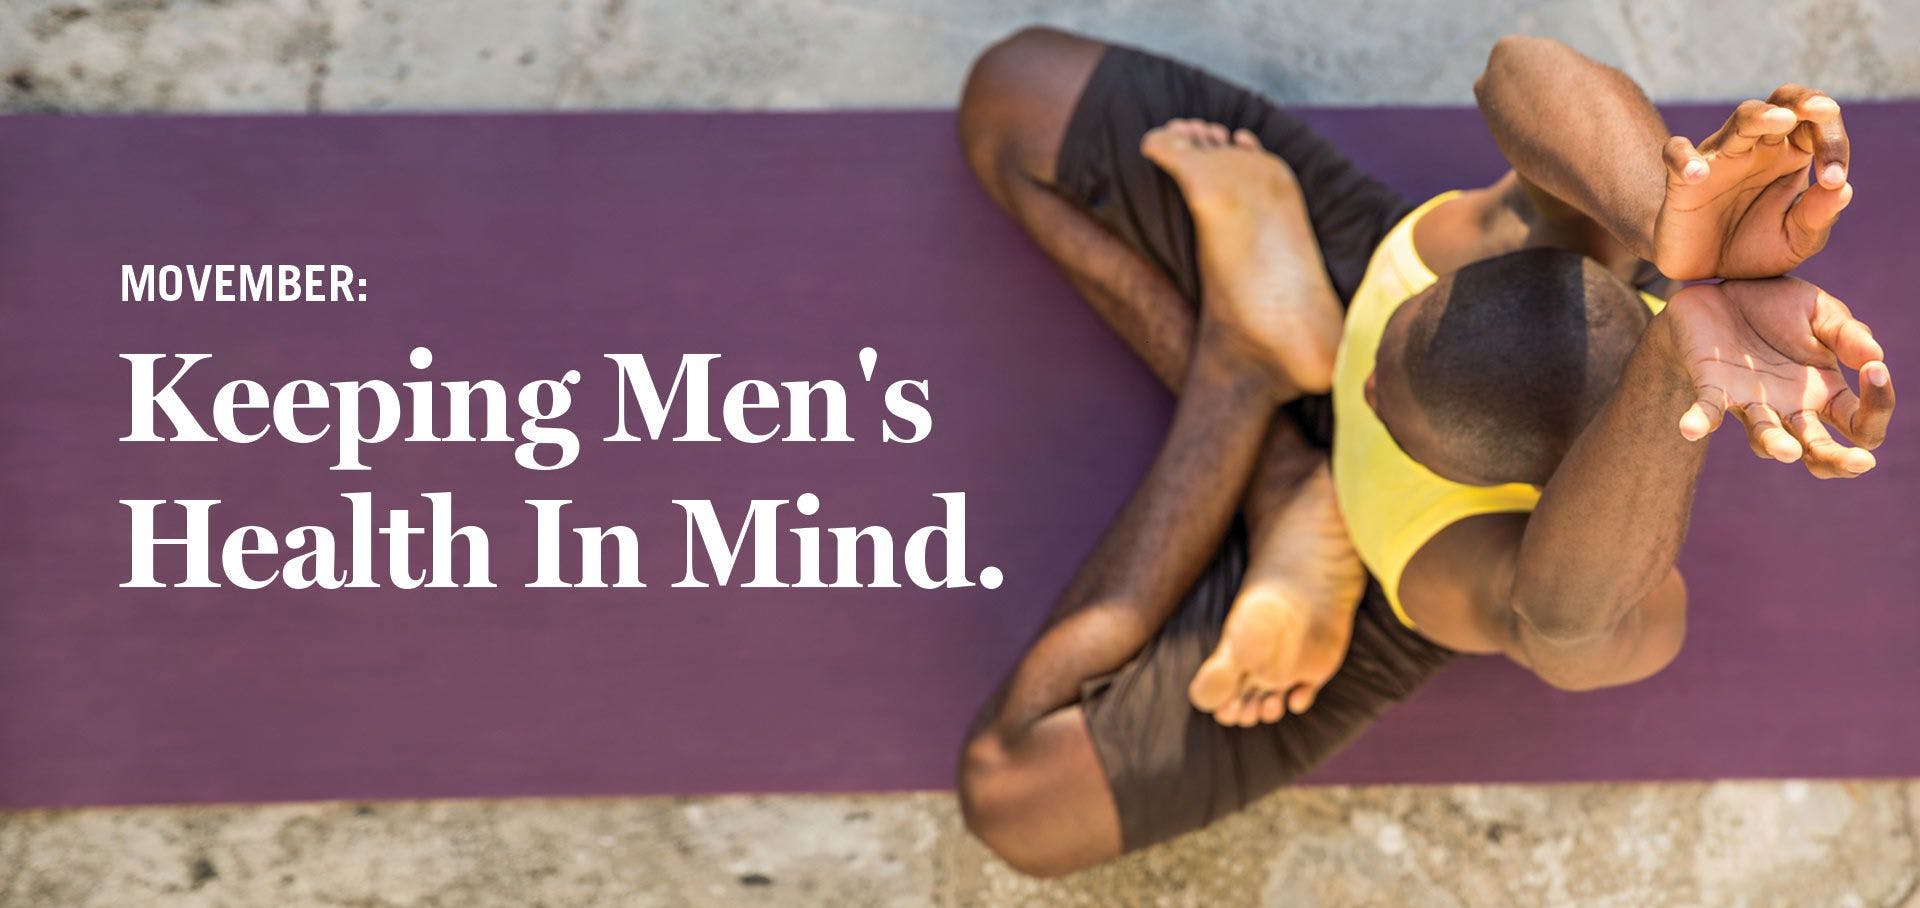 Men’s Wellness is Essential